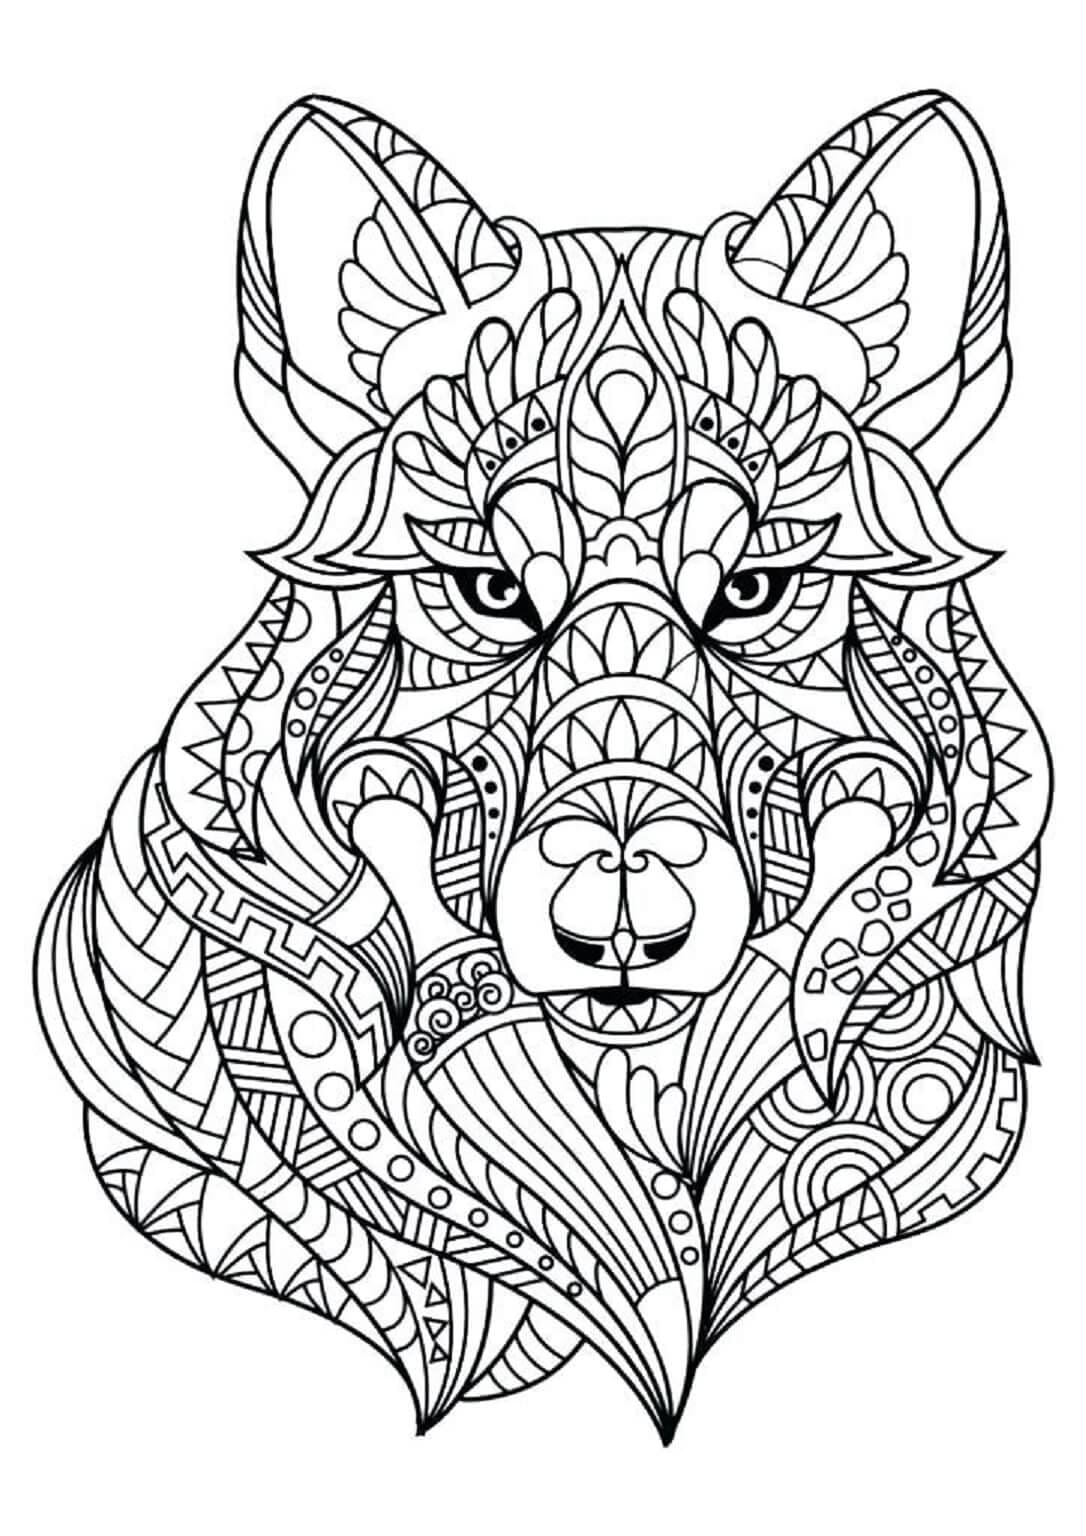 Dibujos de Mandala con cara de Perro genial para colorear